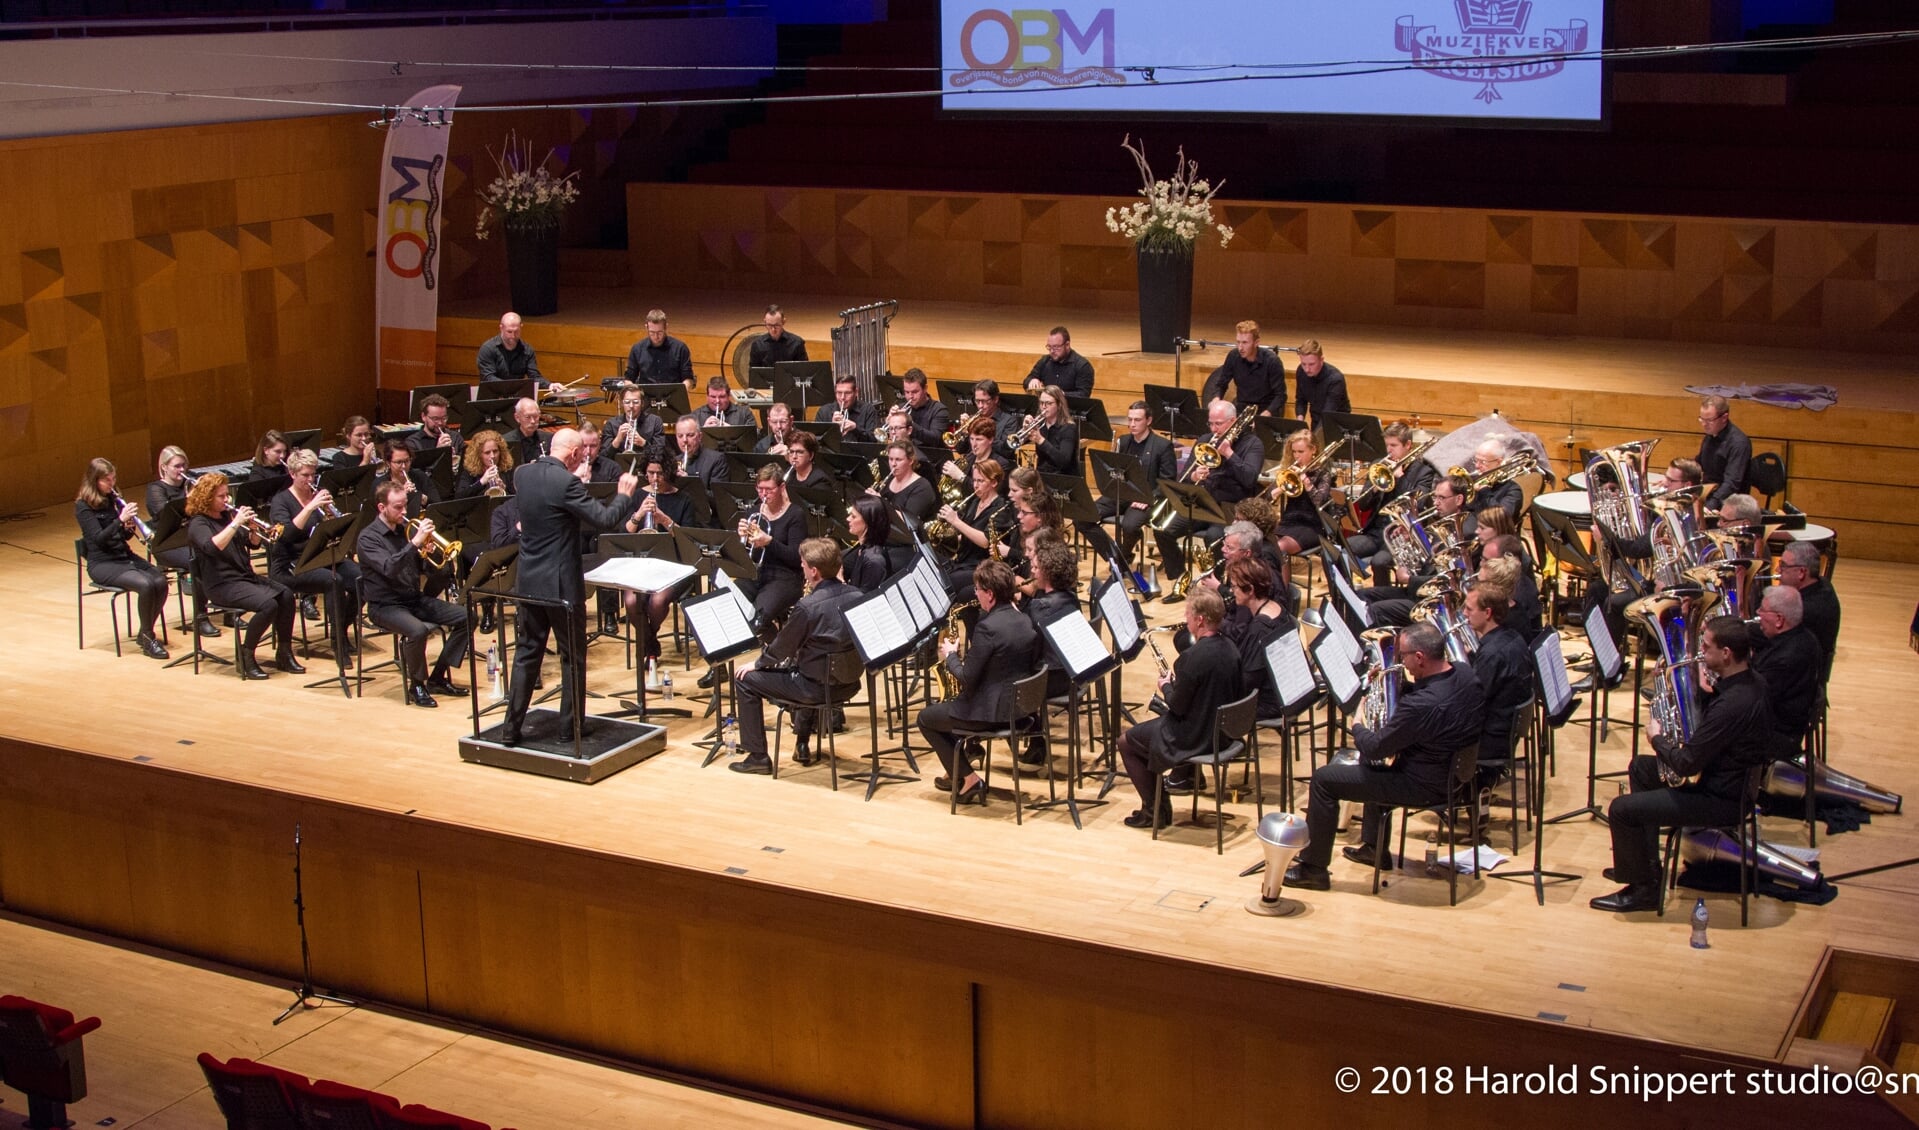 Fanfareorkest De Hoop uit Stellendam wil muzikaal stilstaan  bij 75 jaar vrijheid  en doet dat onder meer met een bijzonder nieuwjaarsconcert. (Foto: Harols Snippert)